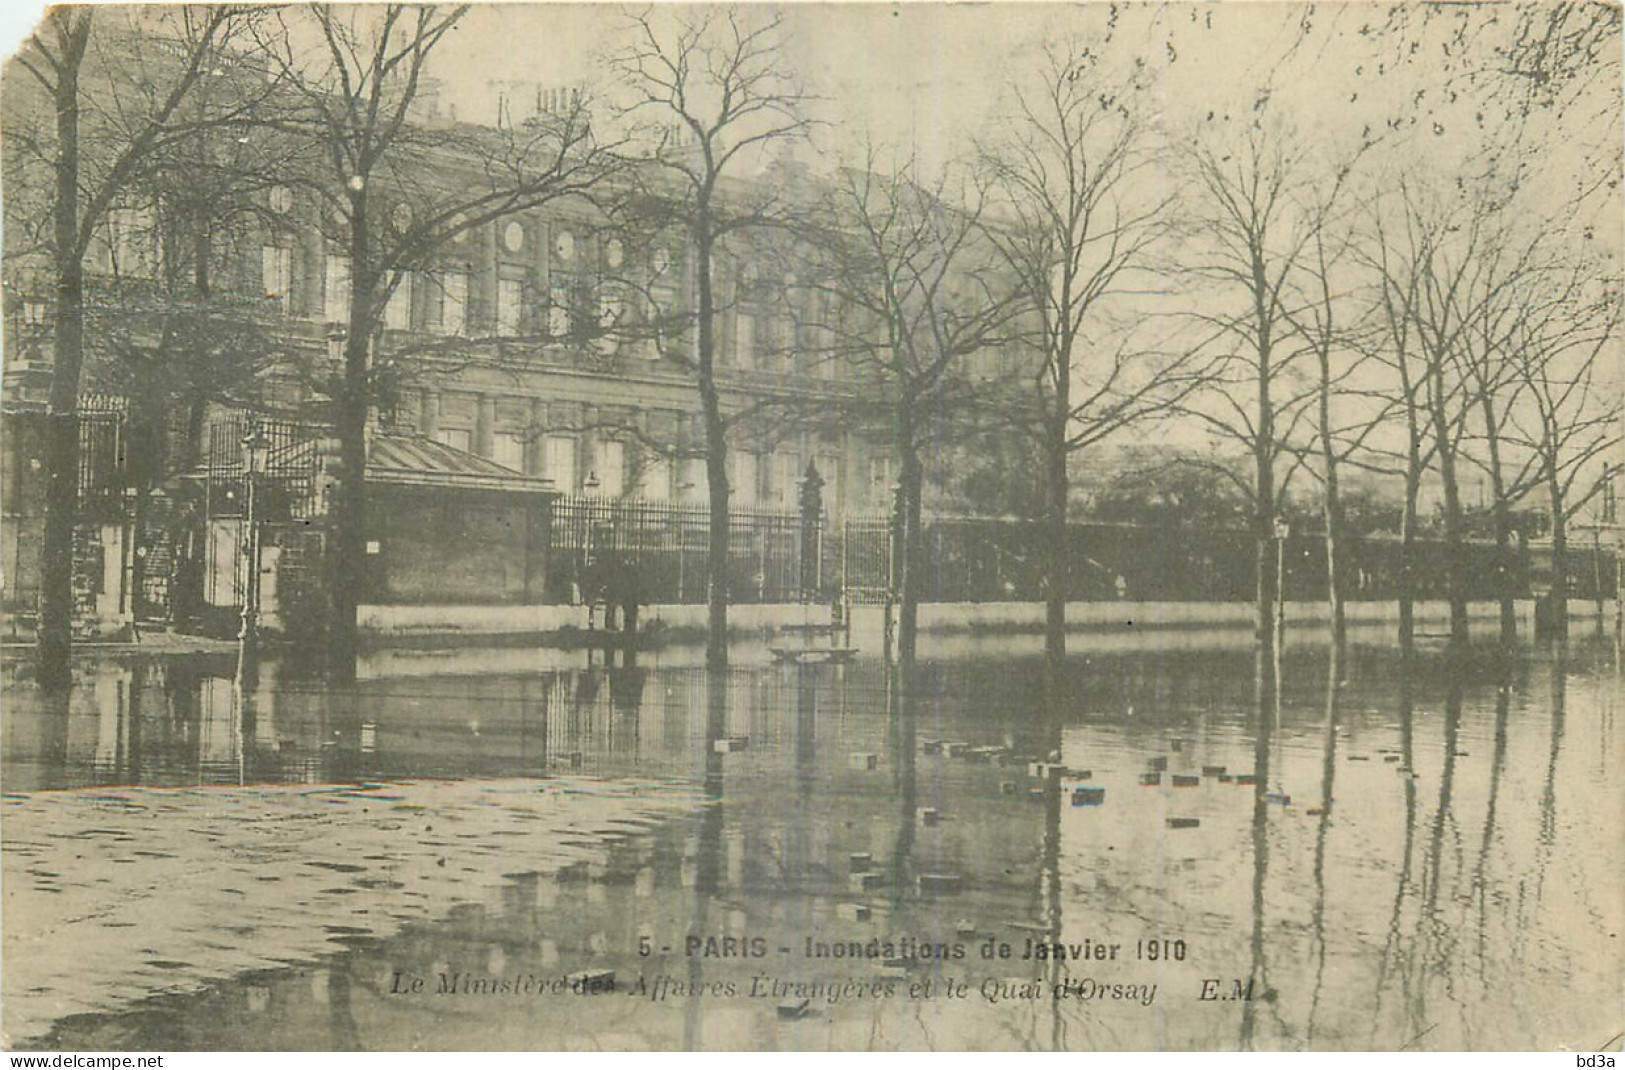 75 - PARIS - INONDATIONS DE 1910 - MINISTERE DES AFFAIRES ETRANGERES - Paris Flood, 1910